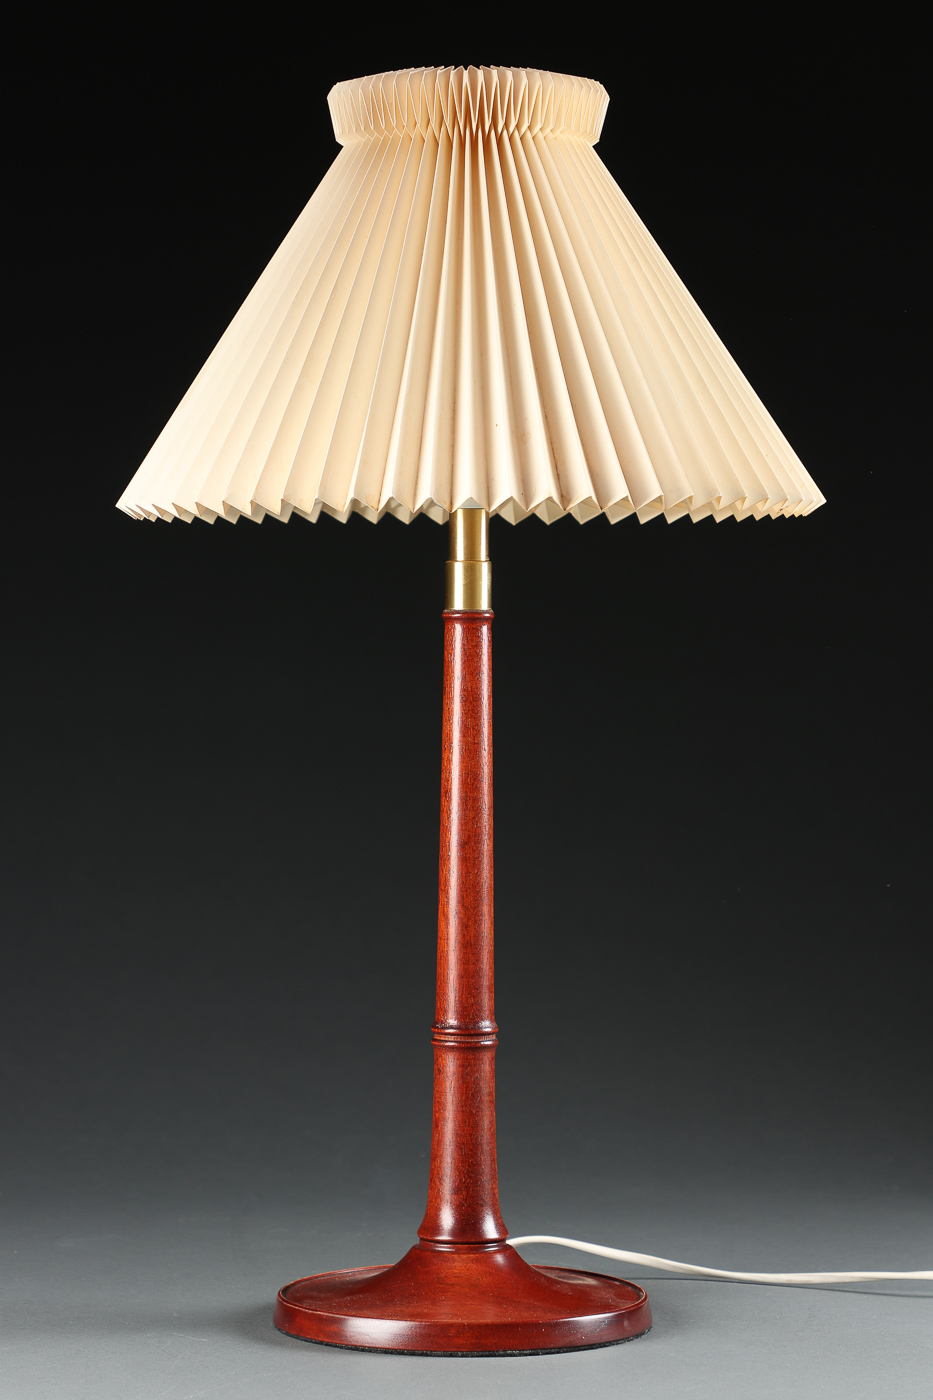 Verdensvindue fure krone Esben Klint. Bordlampe af mahogni, model 327 | Barnebys